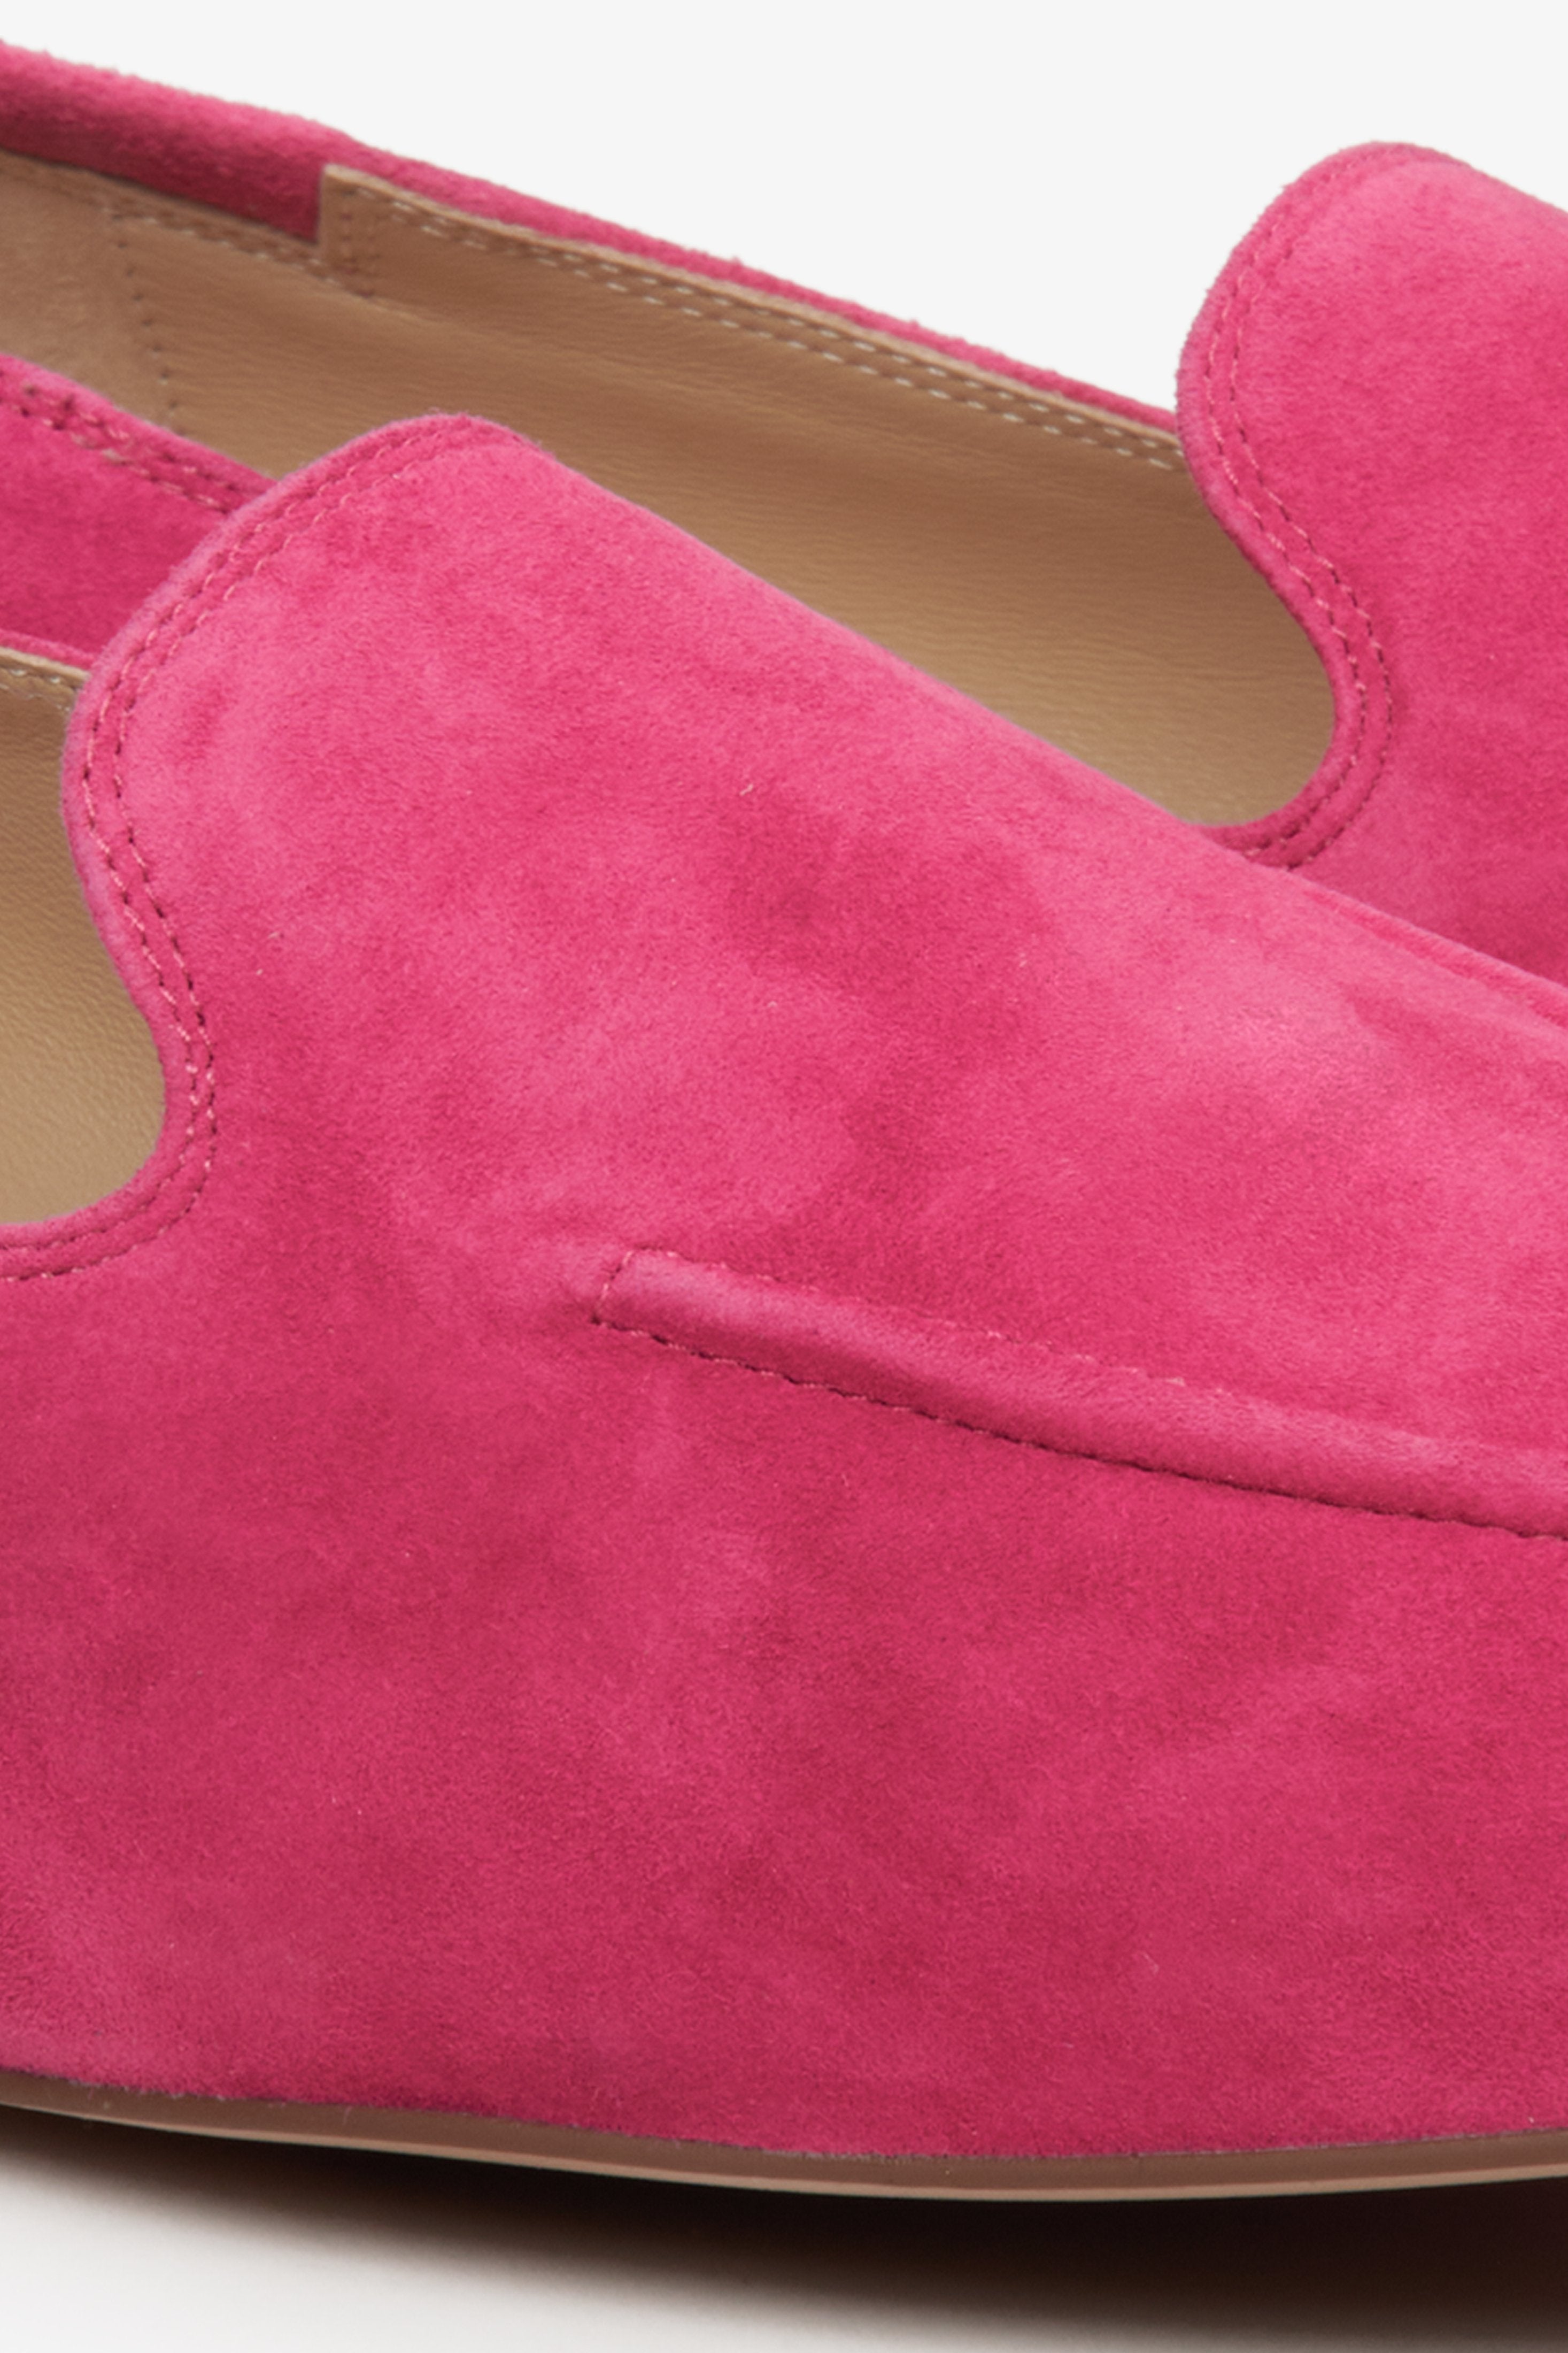 Damskie loafersy w kolorze fuksji - zbliżenie na welurowy materiał.